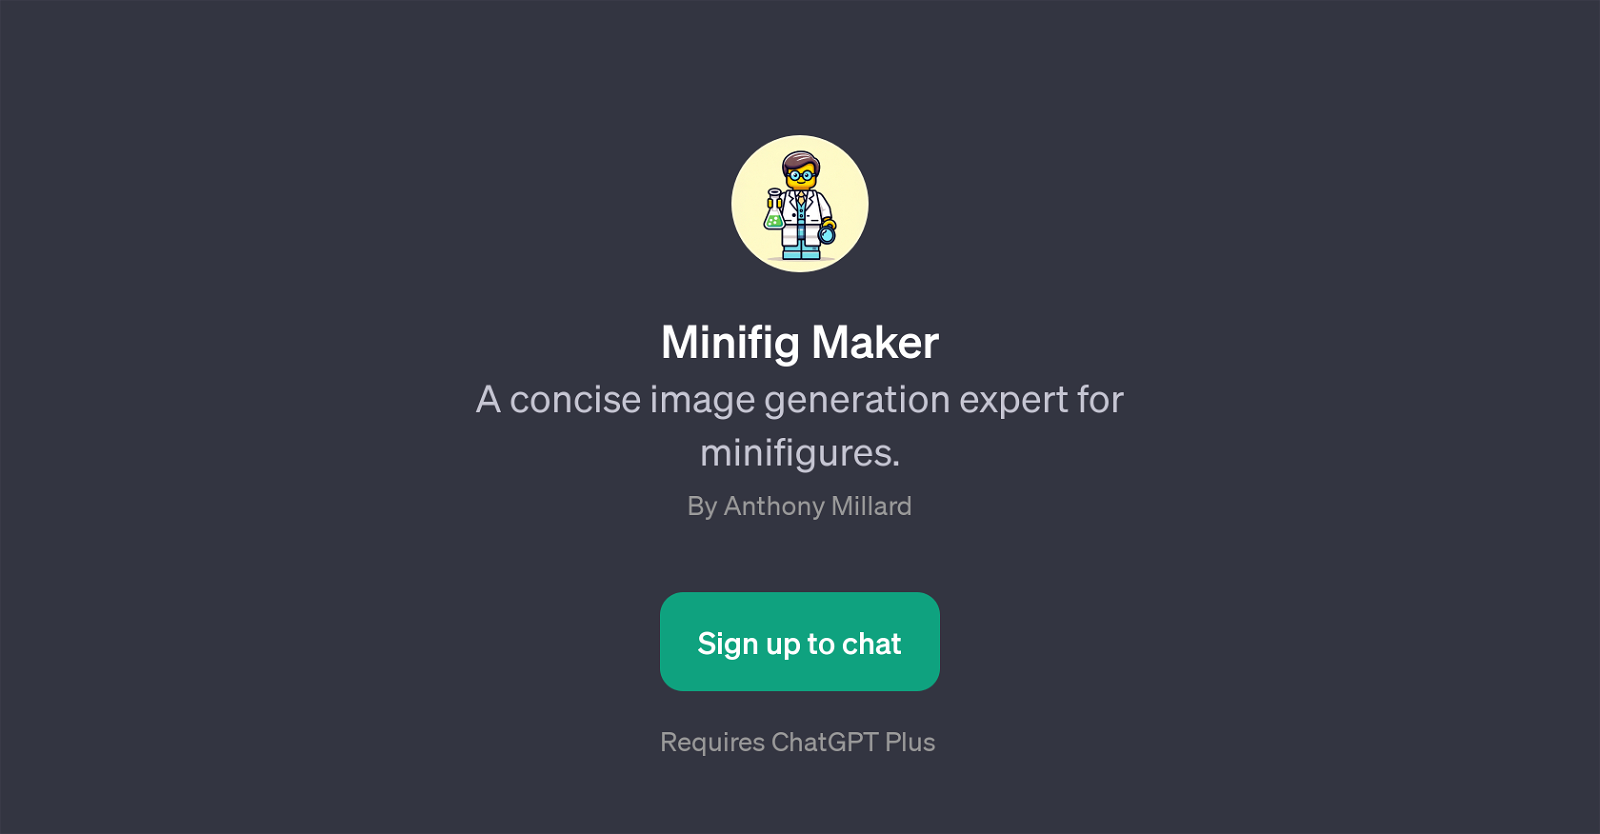 Minifig Maker website